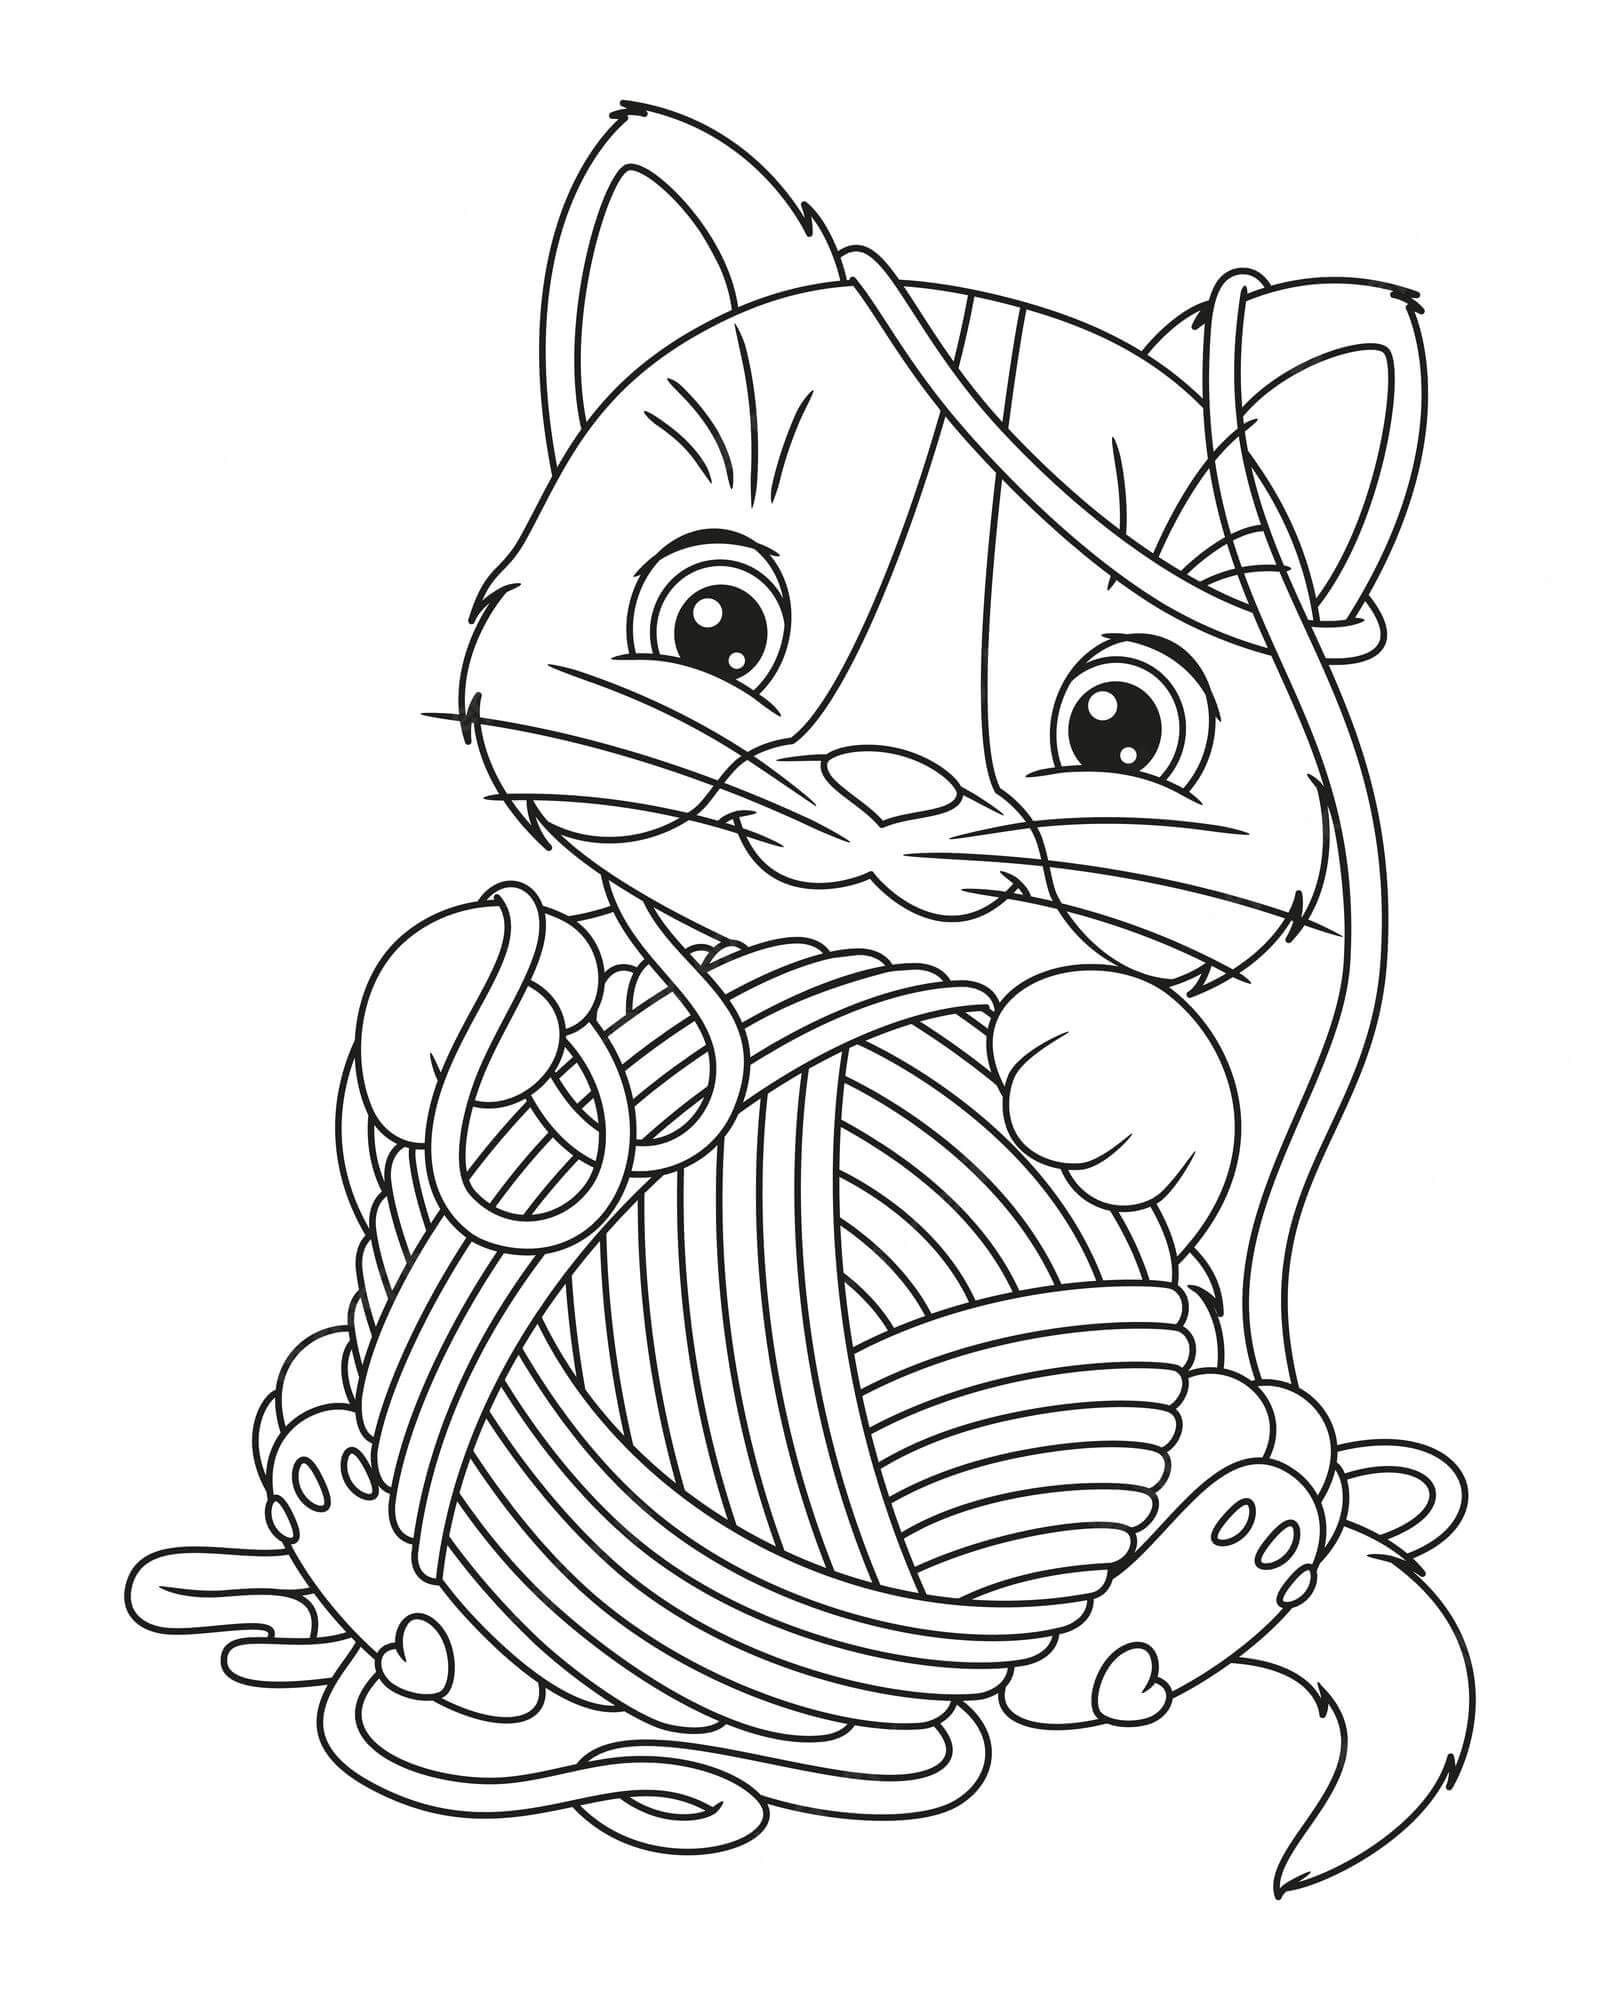 Desenhos de Gato com Bola de Lã para colorir